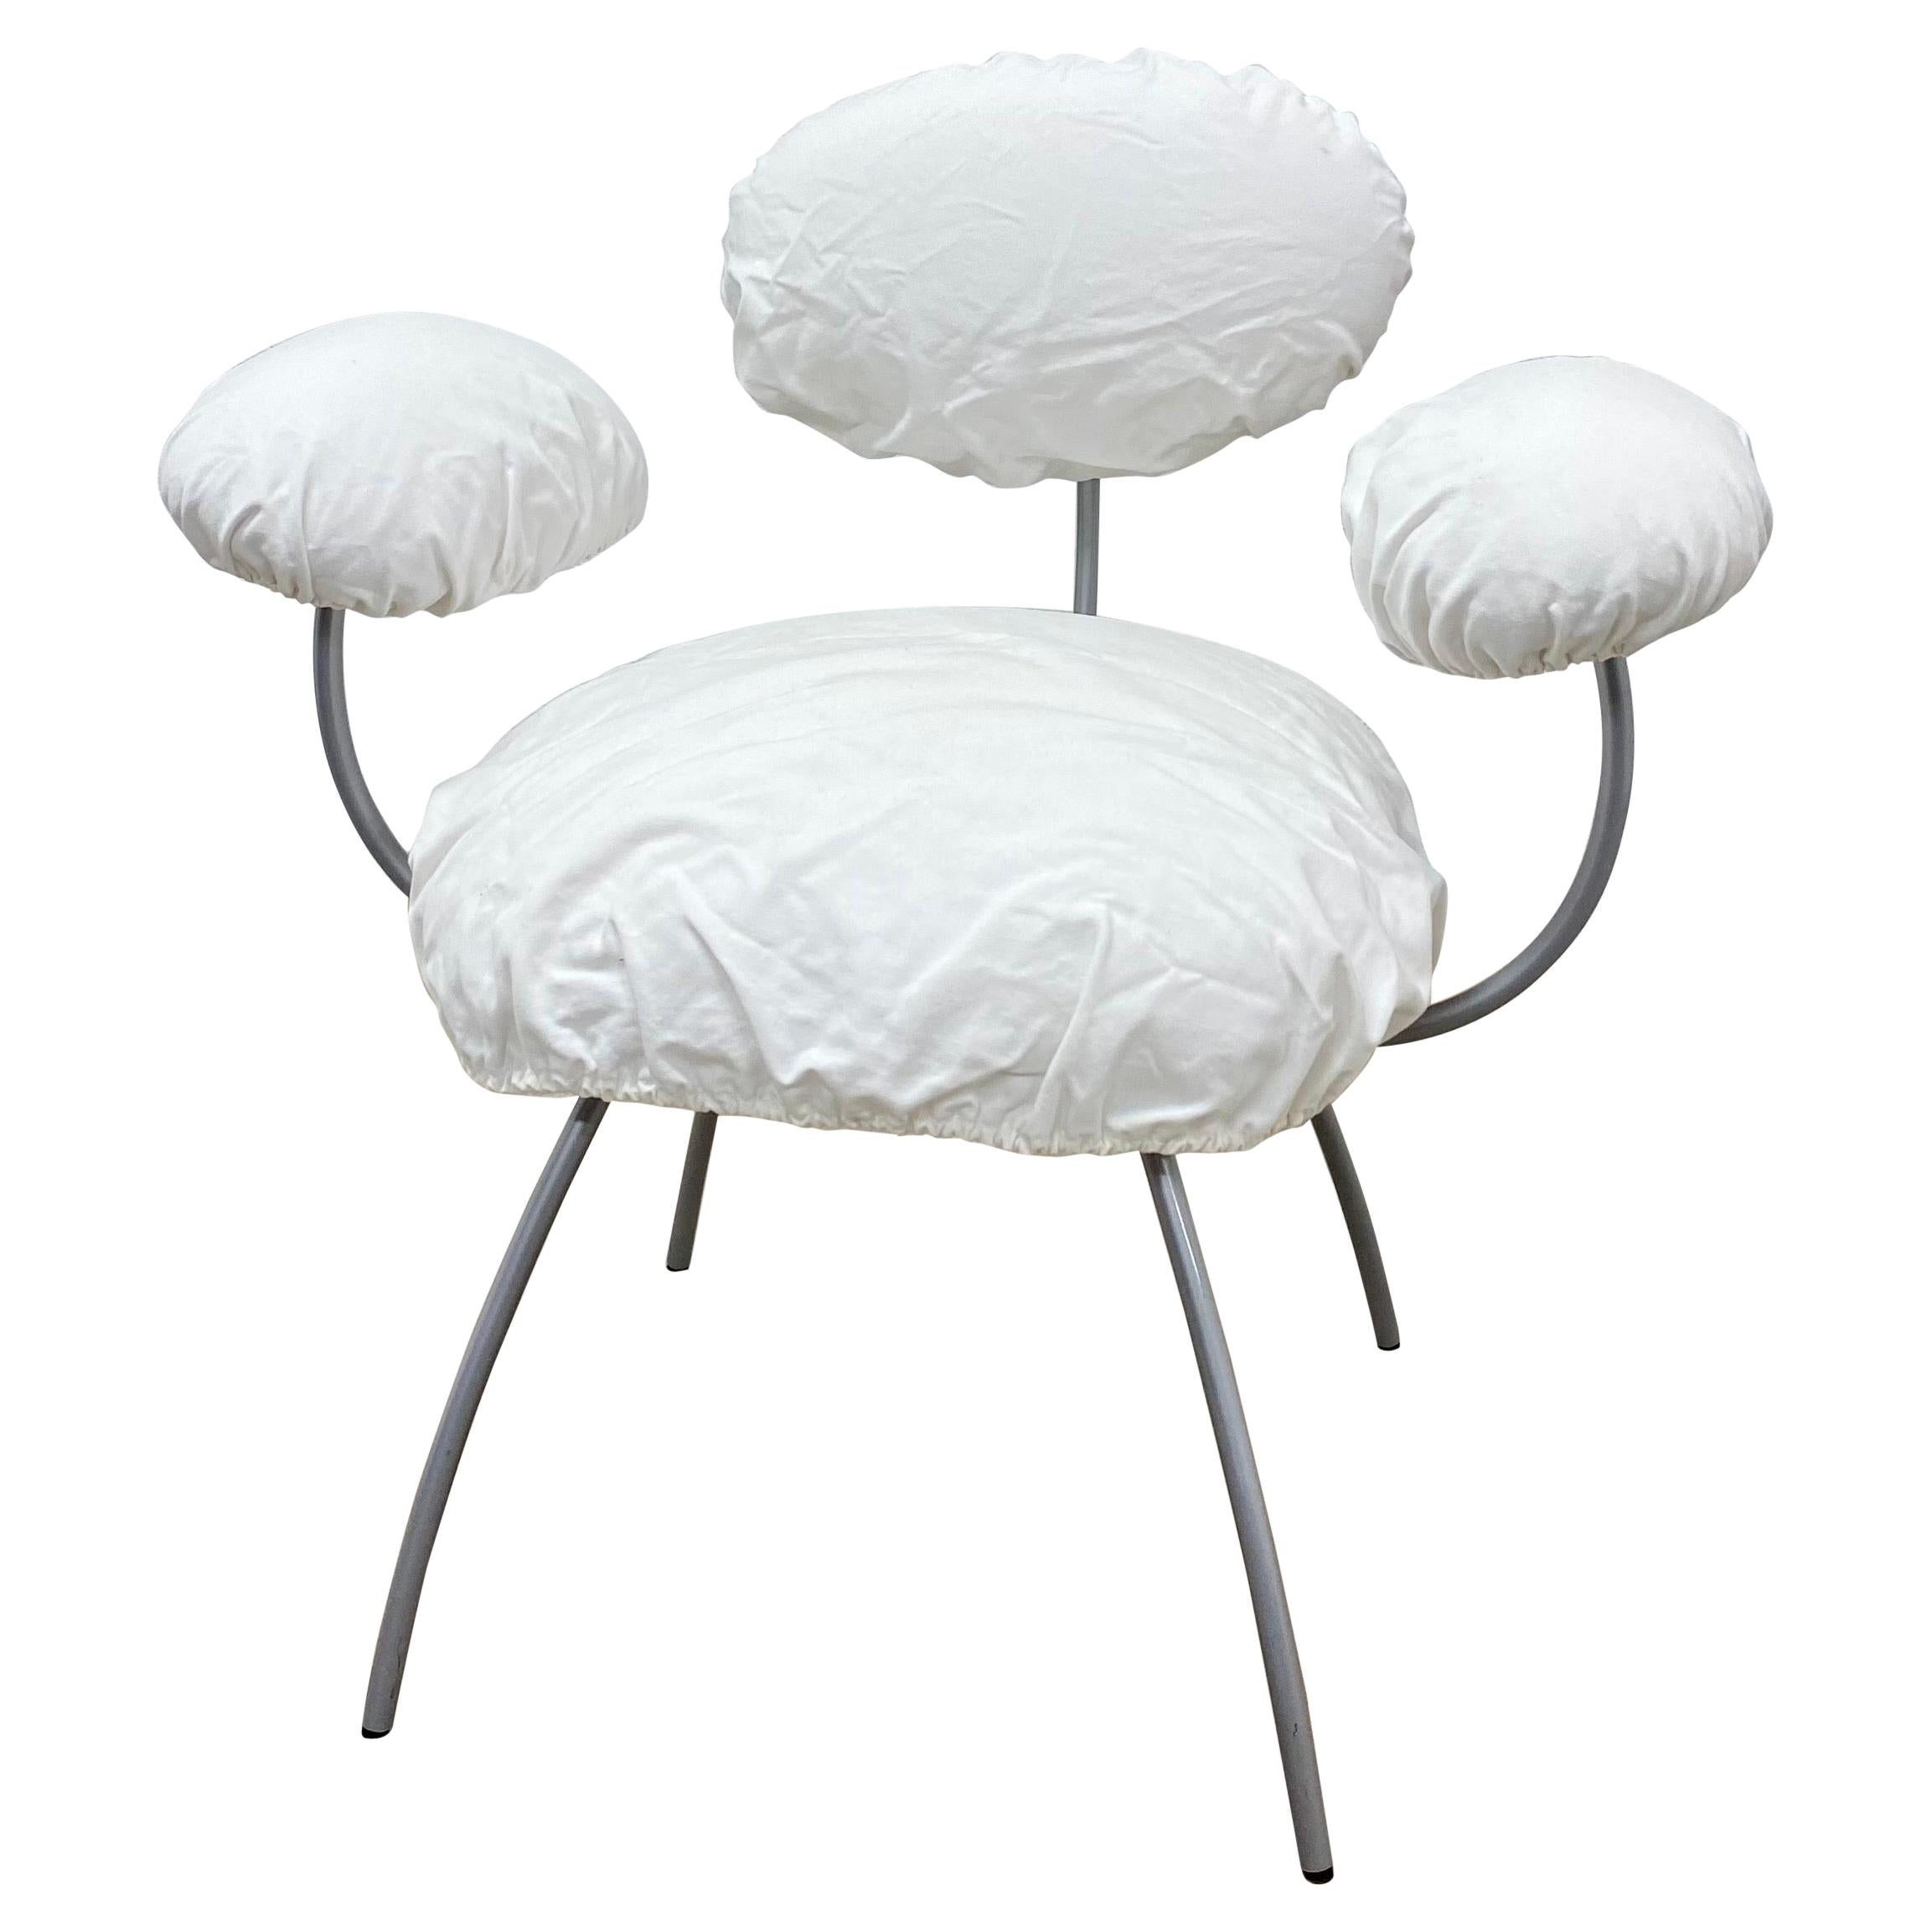 Jean Nouvel "Saint James" White Linen Dining Chair for Ligne Roset